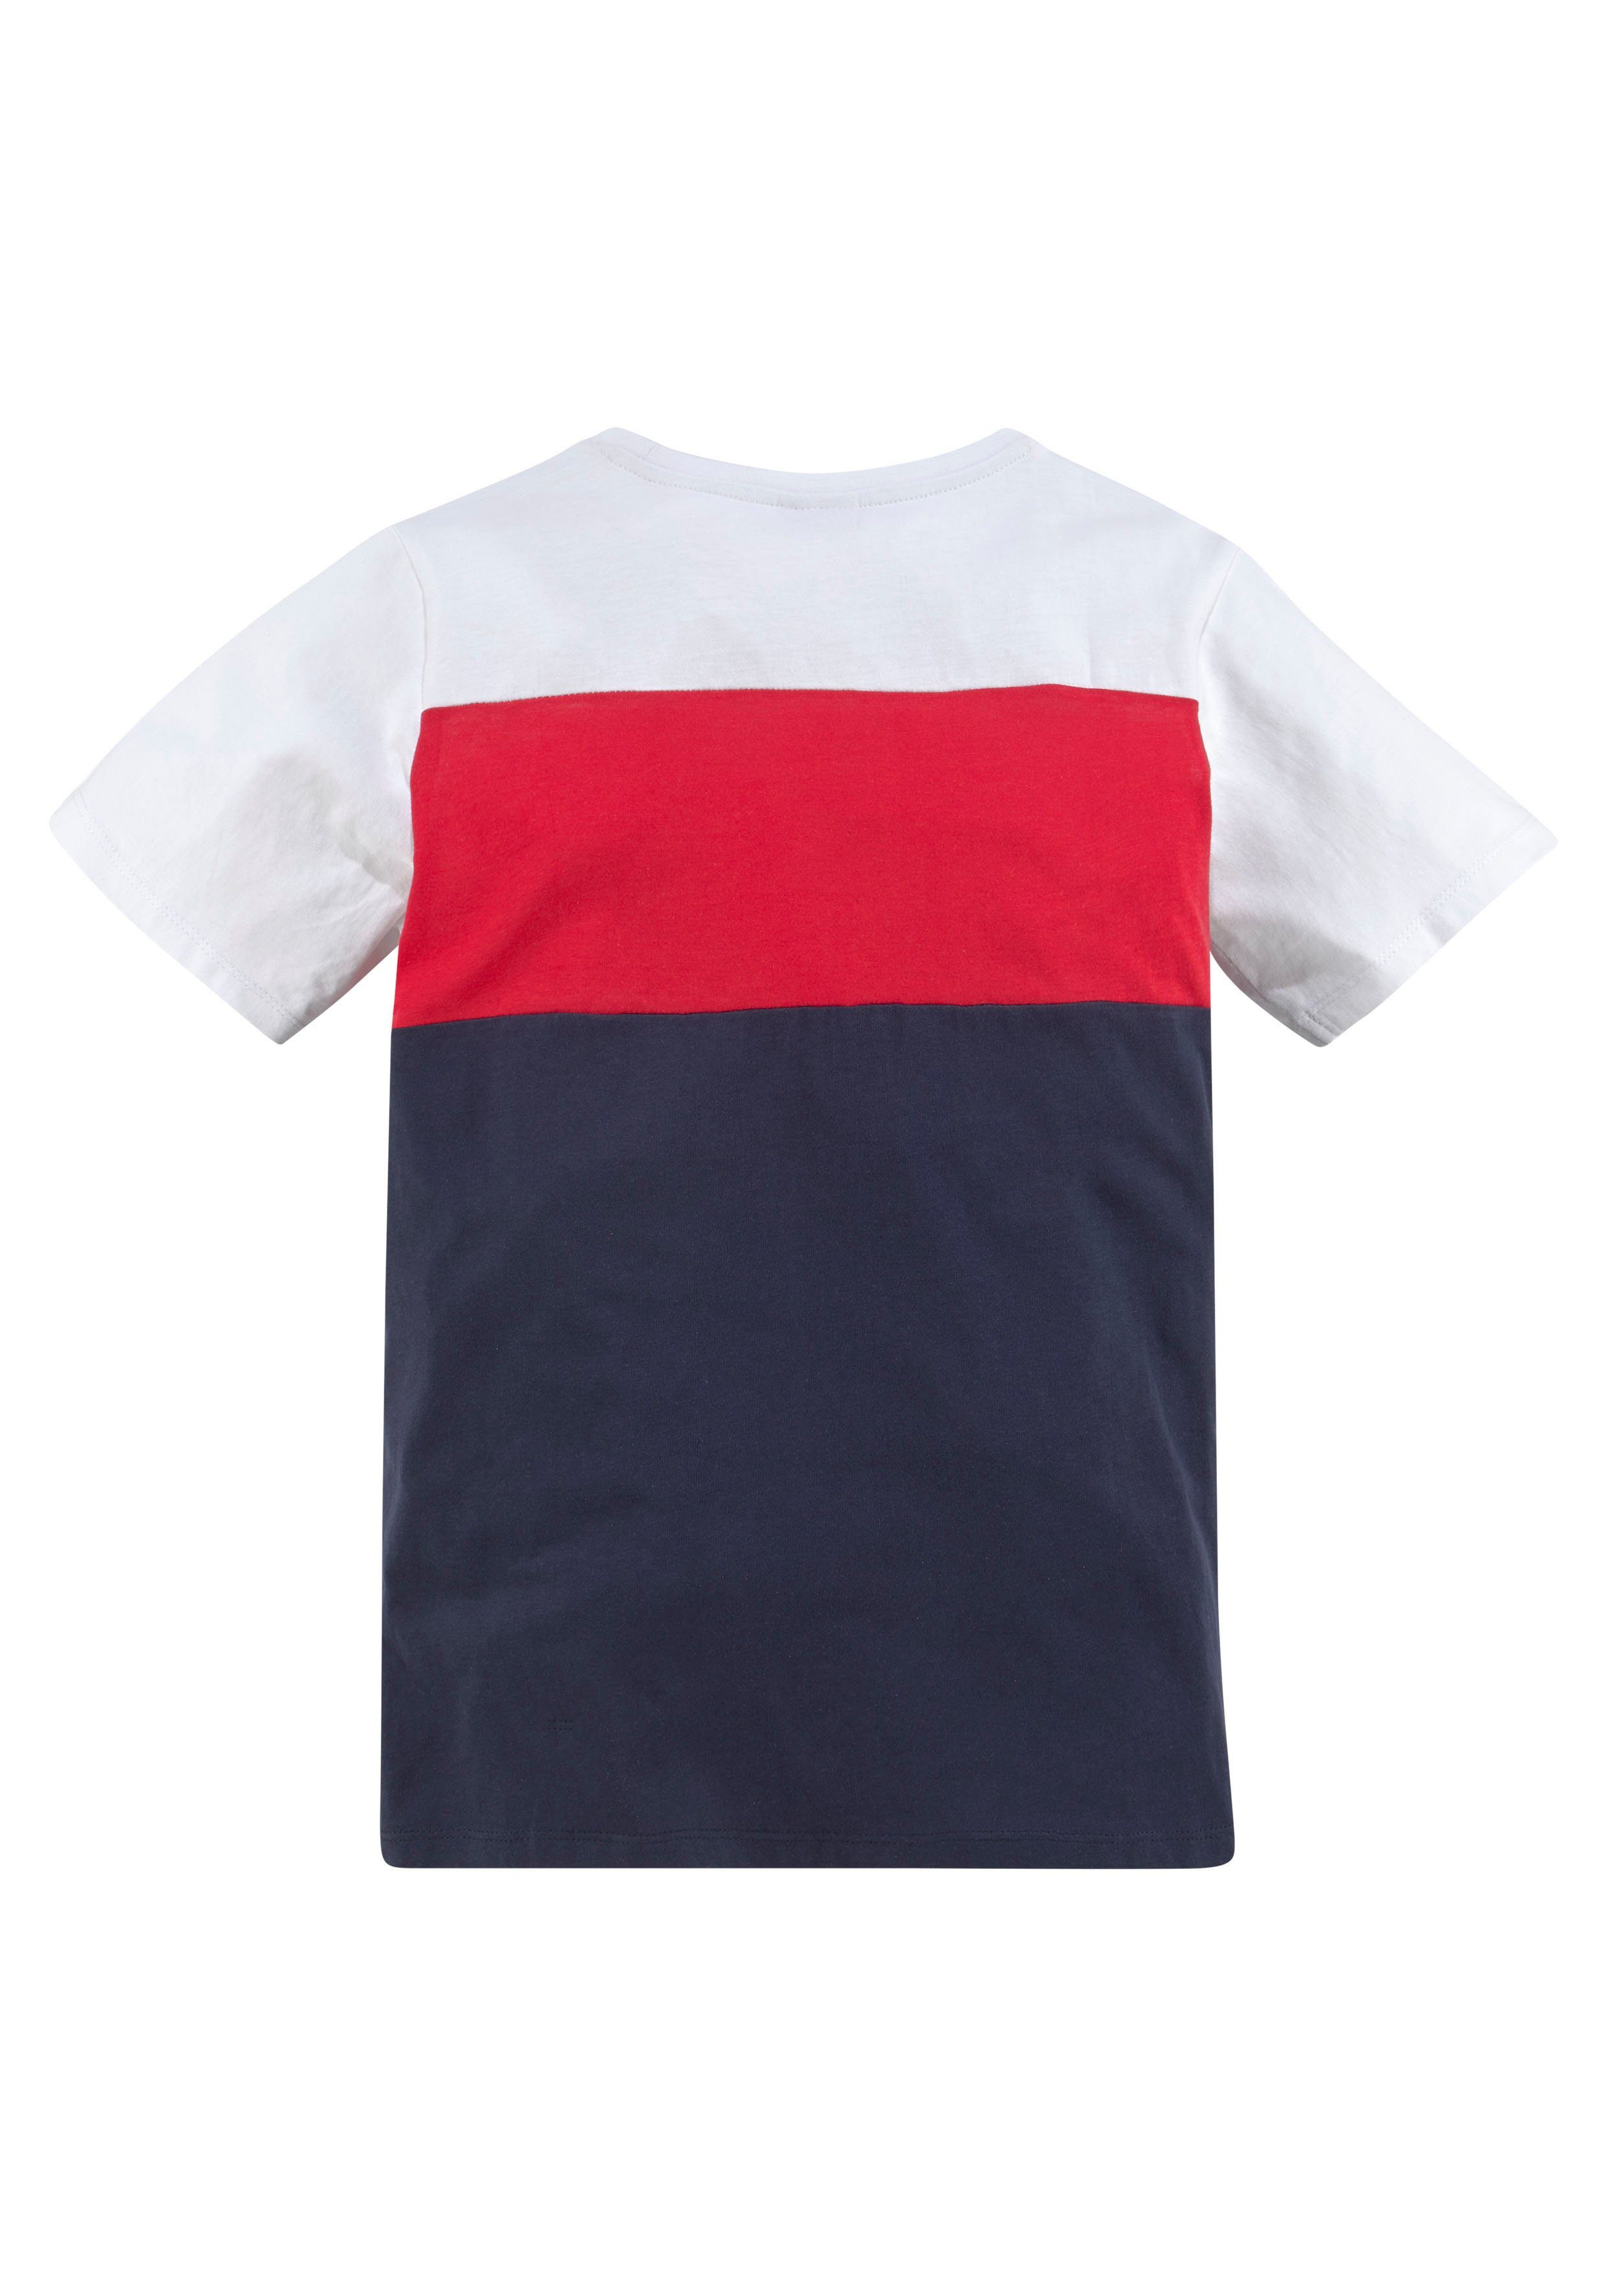 T-Shirt in KangaROOS Colorblockdesign